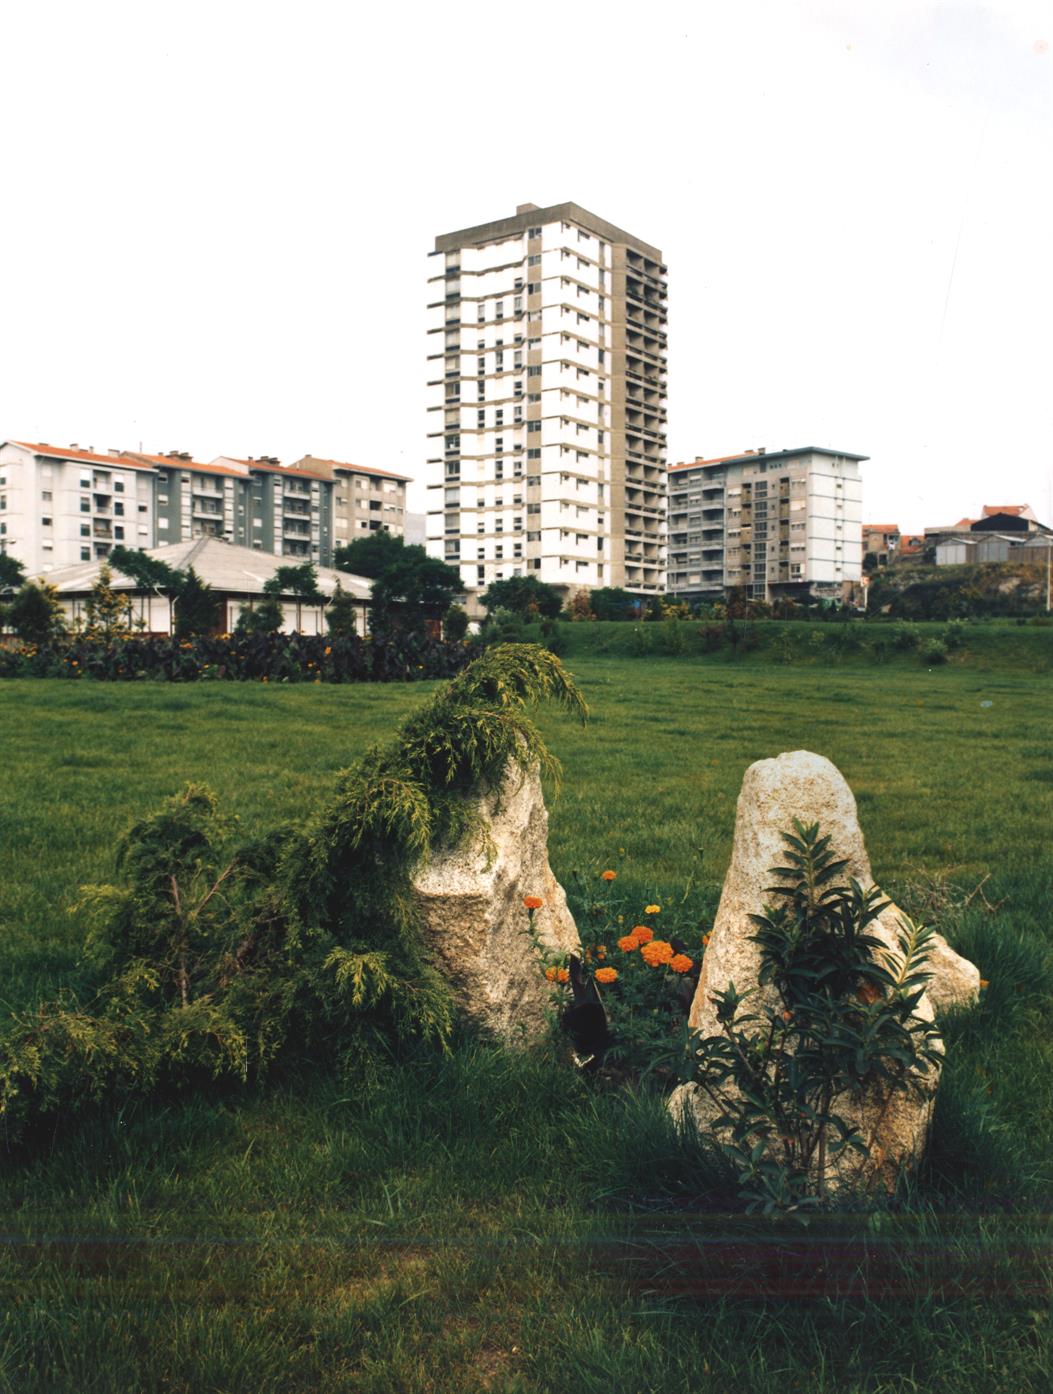 Zona residencial das Antas : jardim